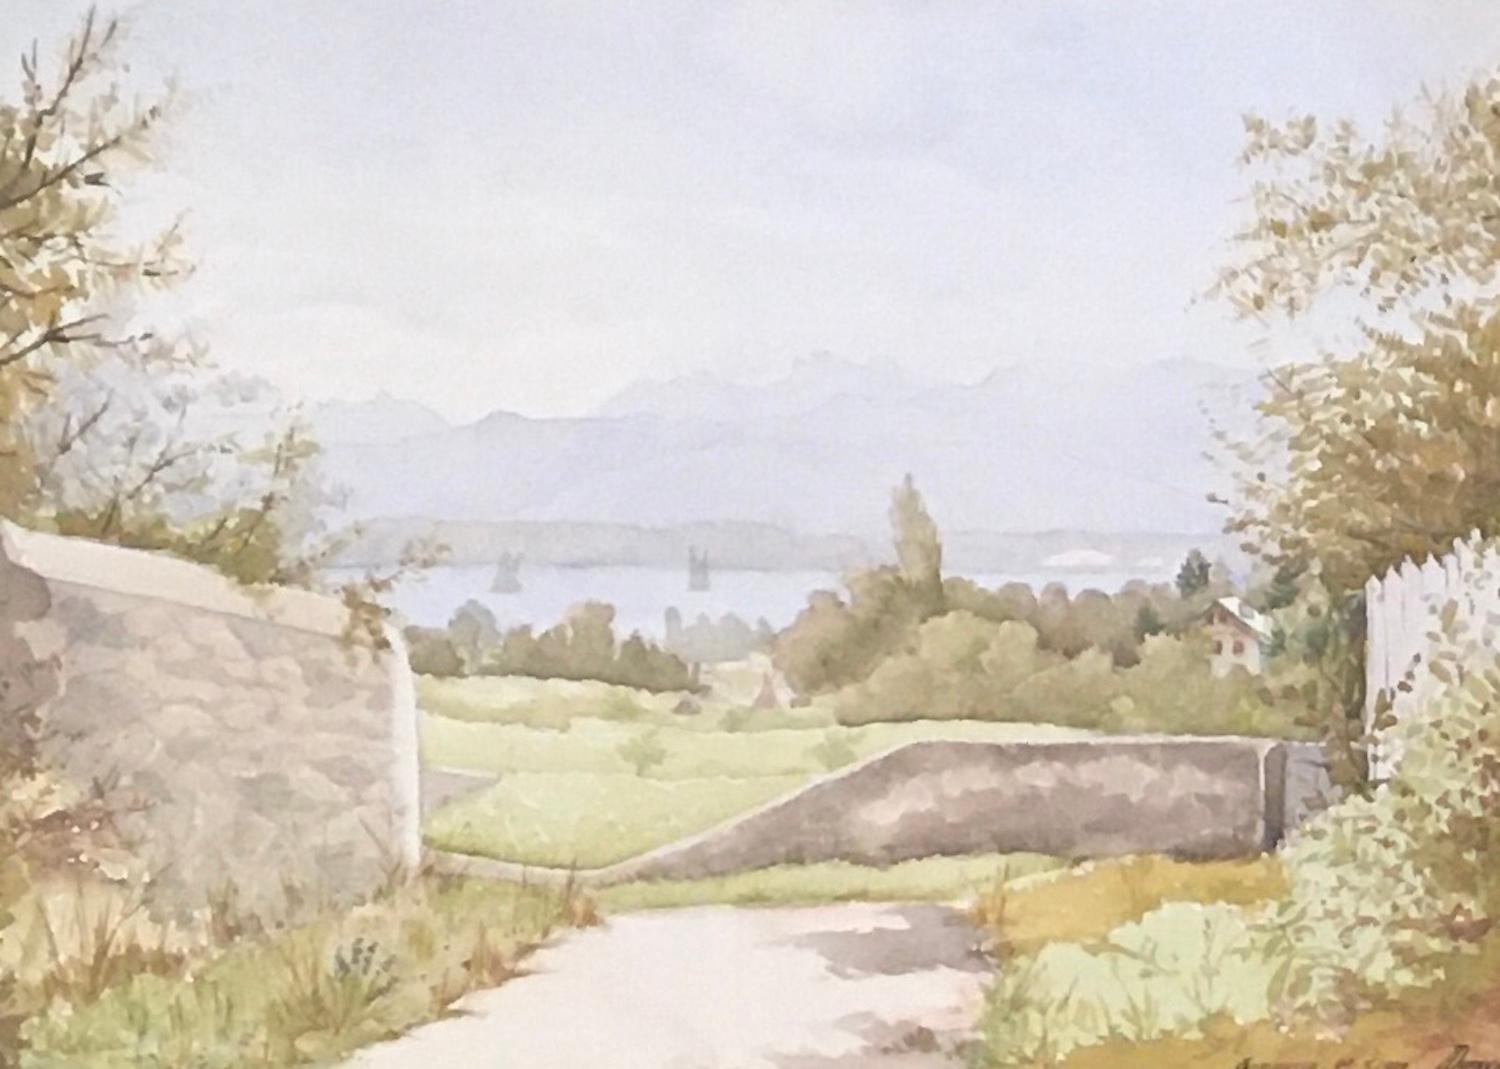 Frédéric Dufaux Landscape Art - Overview of Commugny, Switzerland